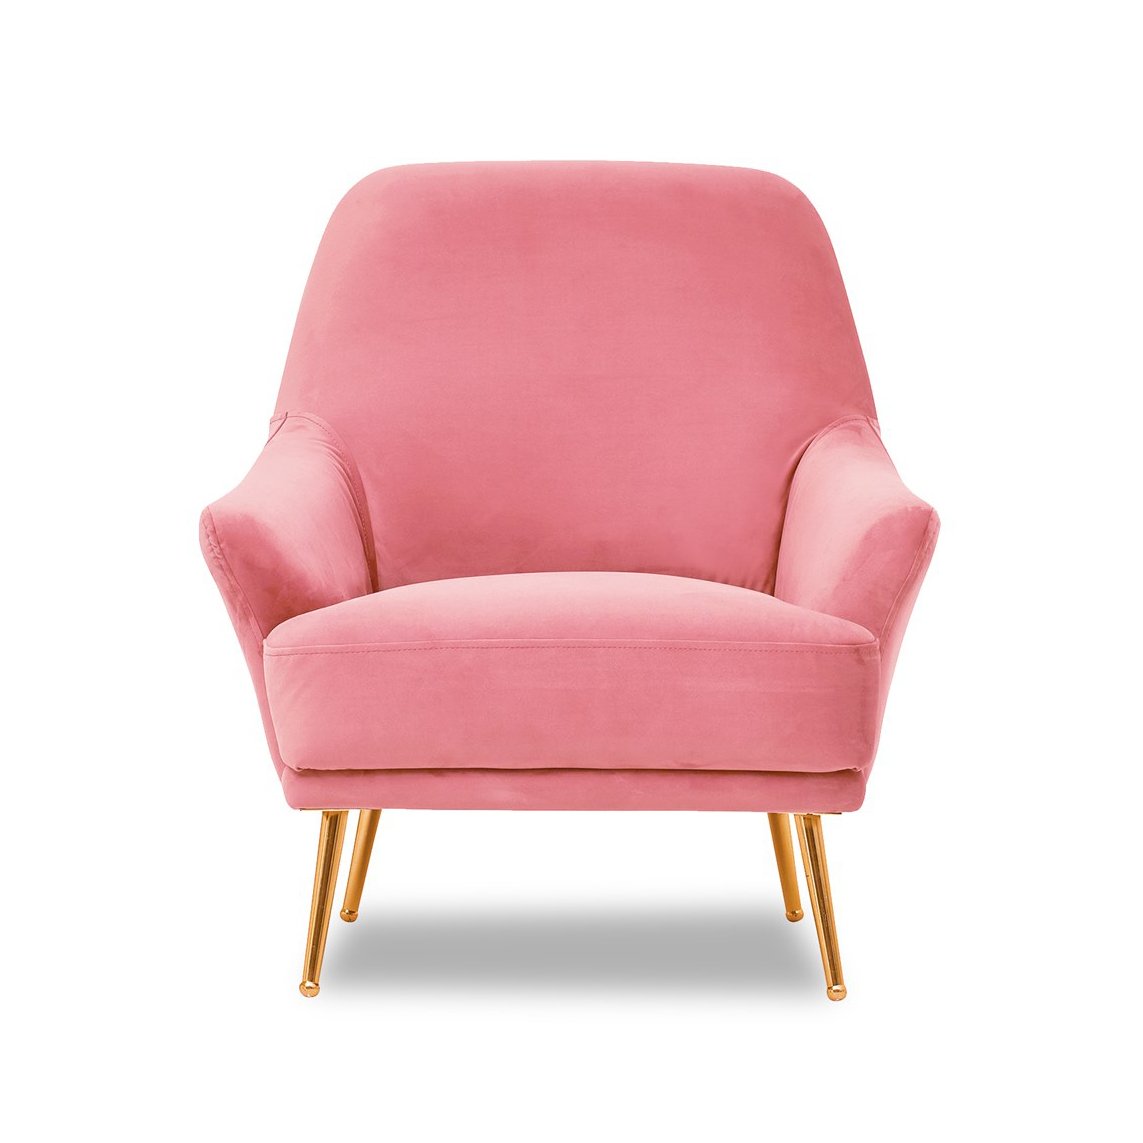 Кресло Enza Home Astoria, цвет розовый (126)126